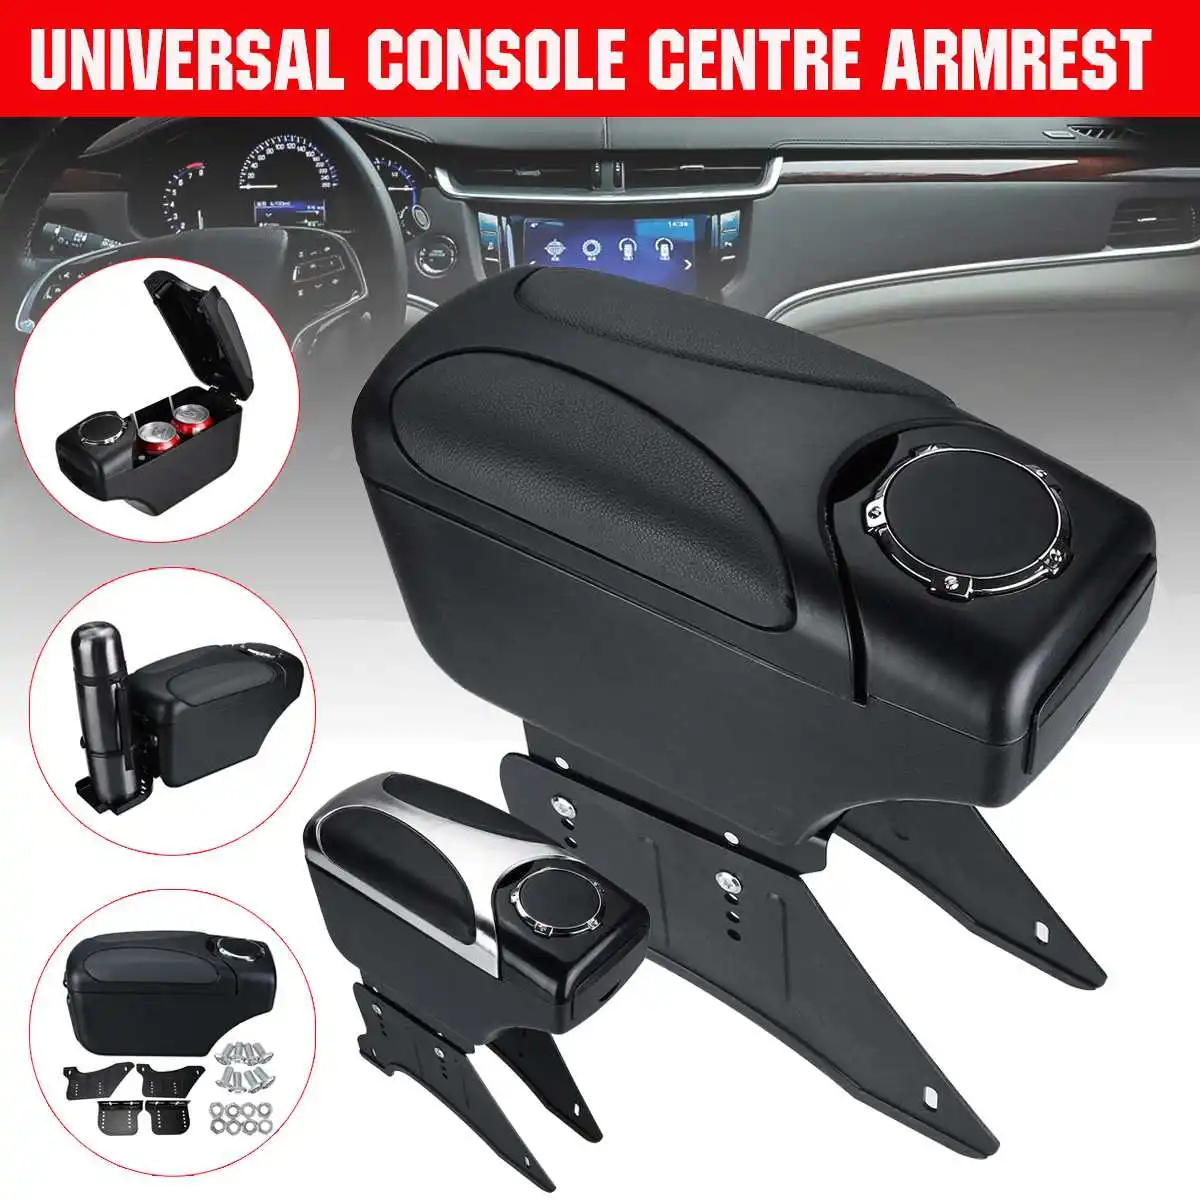 Universal Armrest Arm Rest Centre Console For Car Auto Van Bus Black 